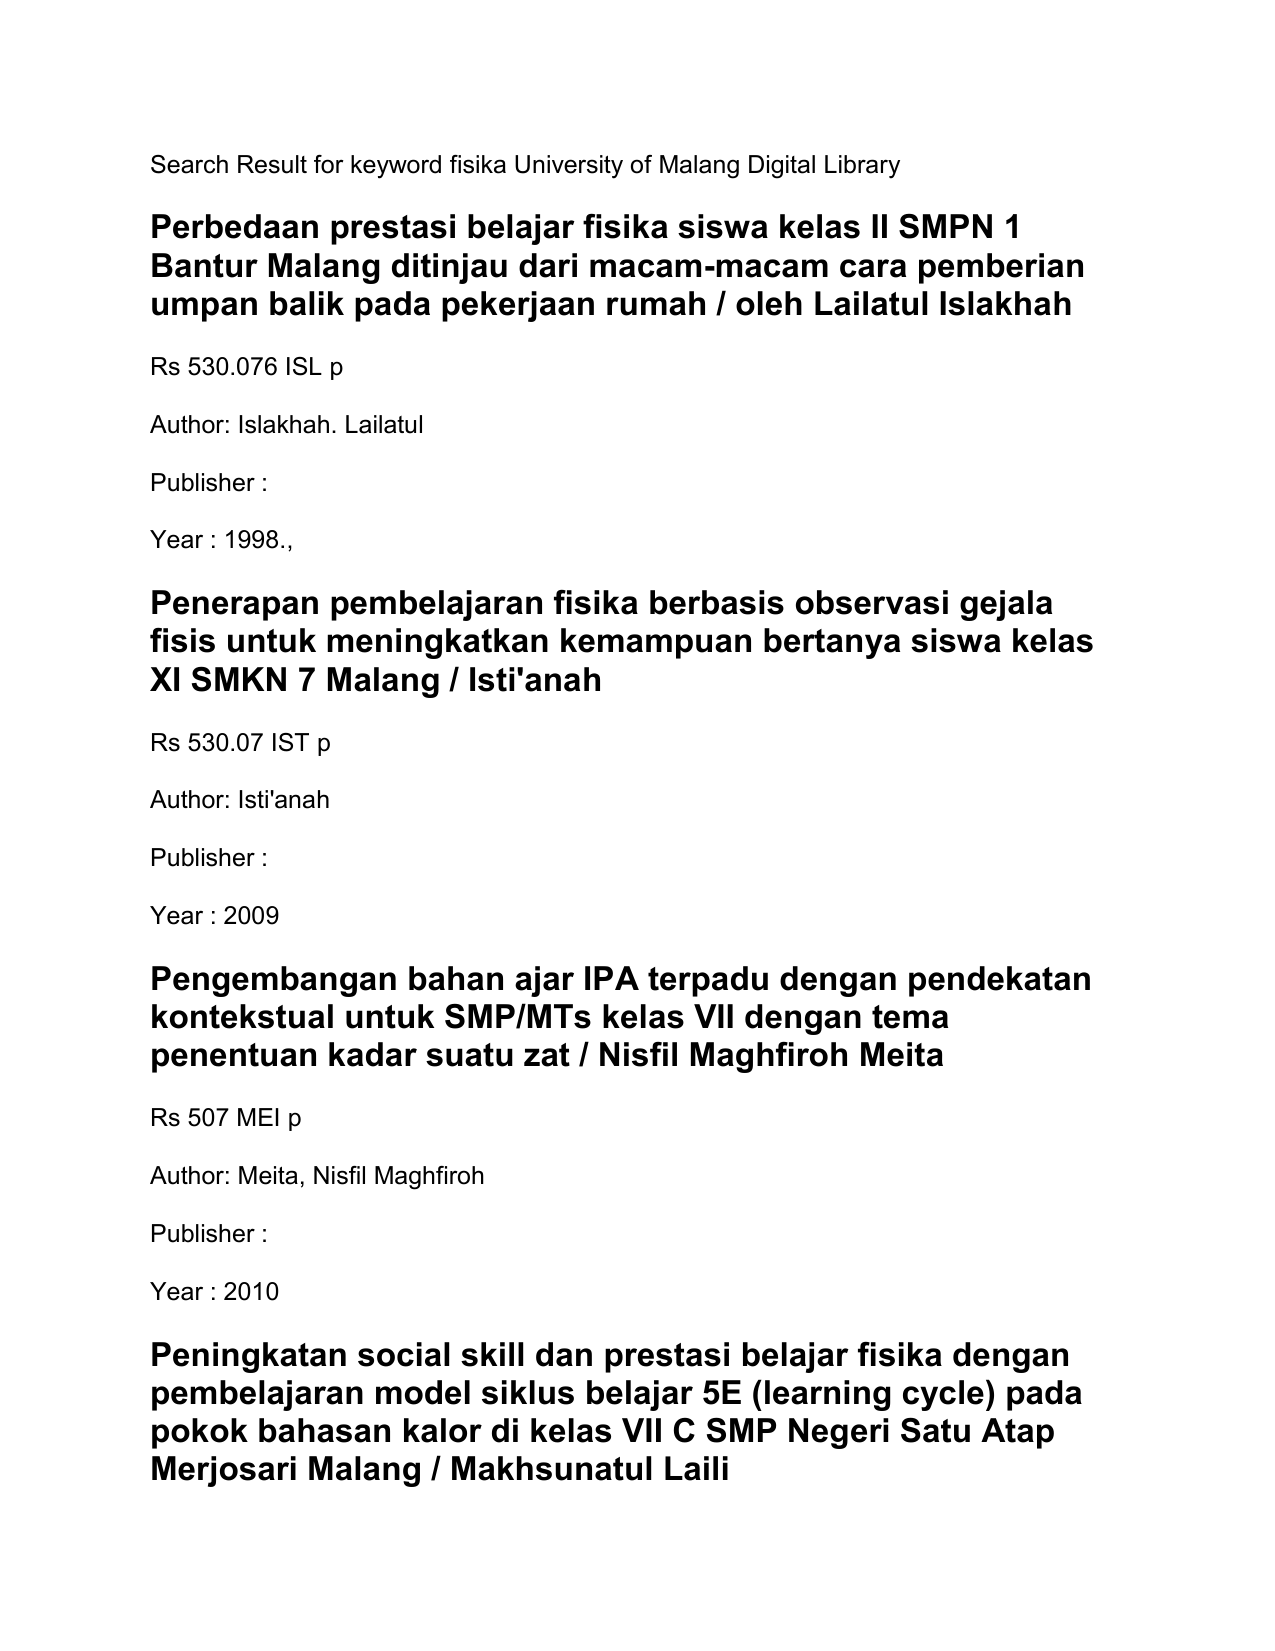 Search Result for keyword fisika University of Malang Digital Library Perbedaan prestasi belajar fisika siswa kelas II SMPN 1 Bantur Malang ditinjau dari